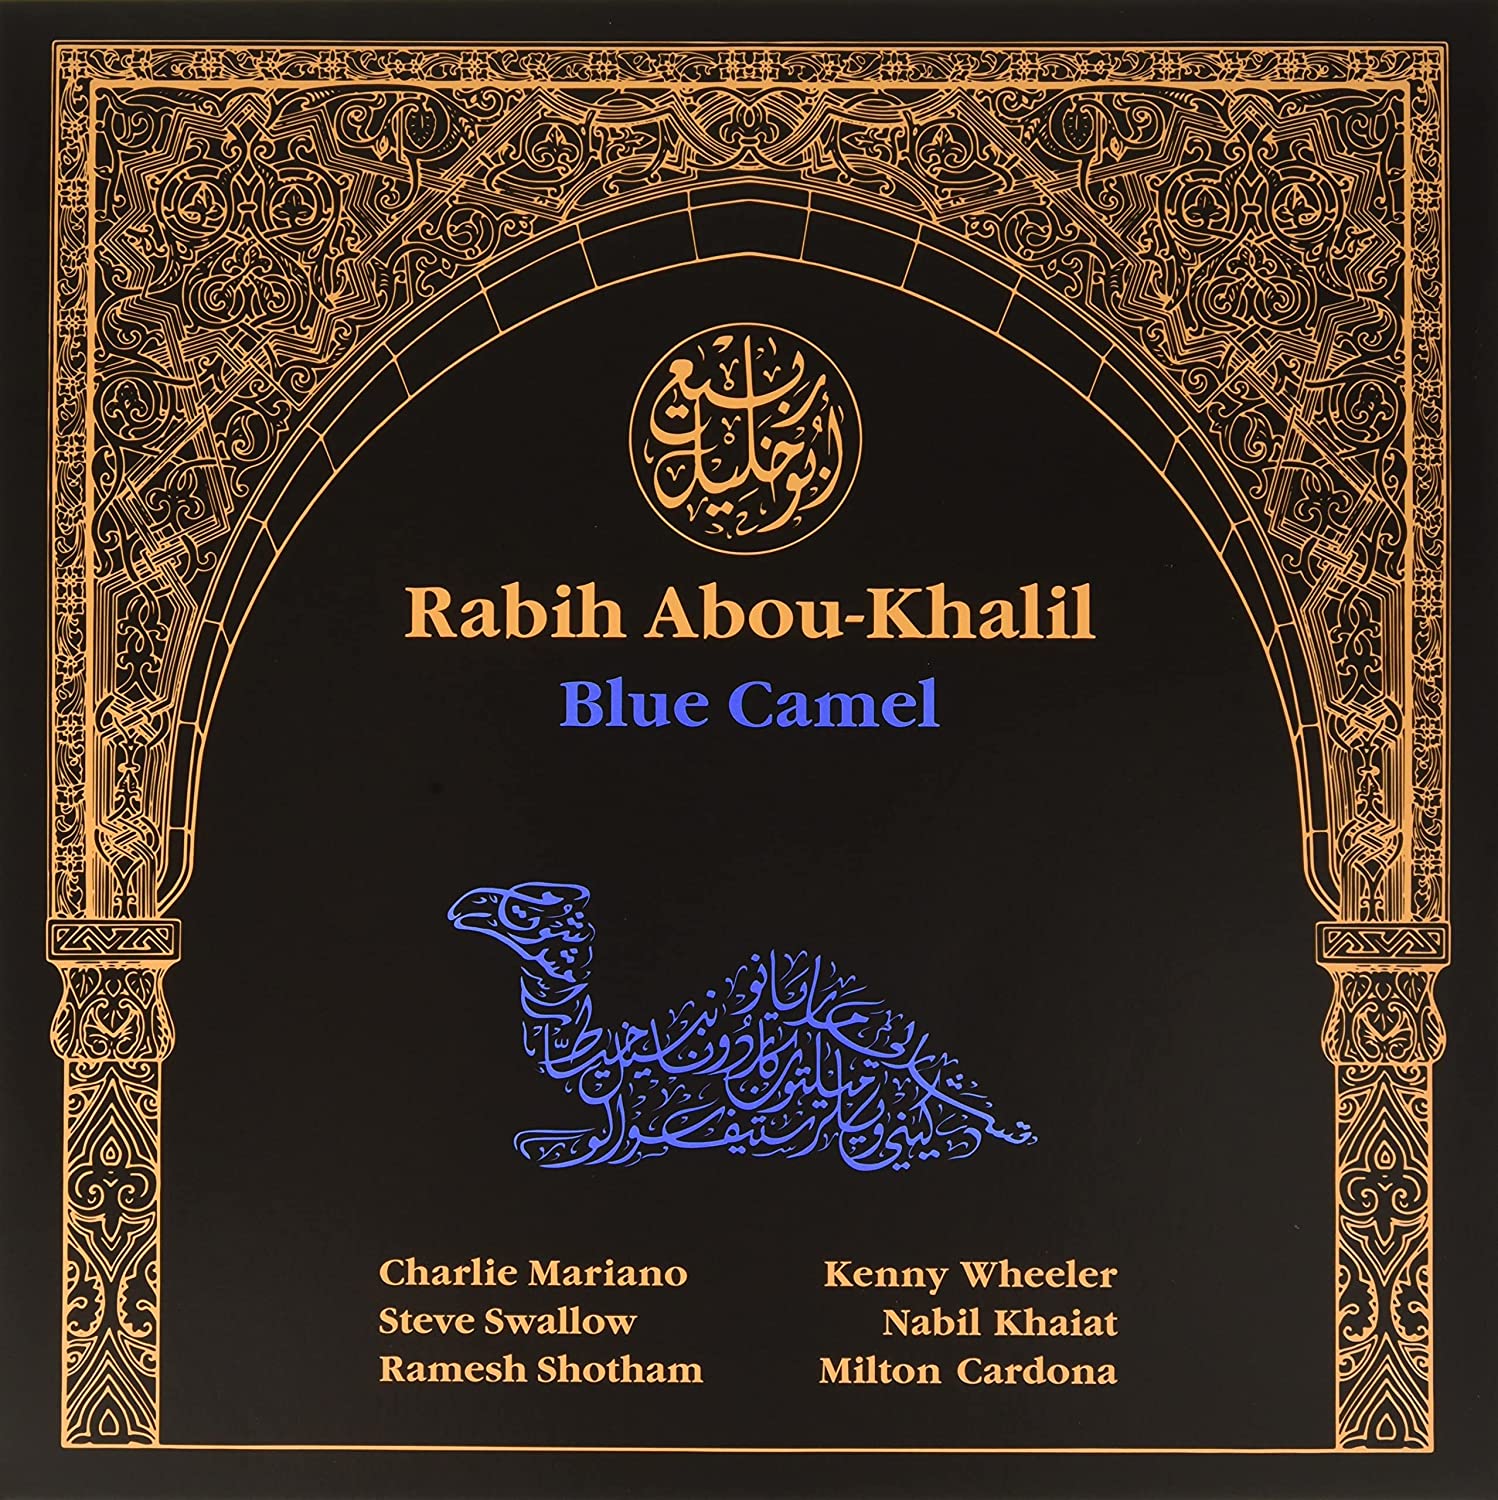 ABOU-KHALIL, RABIH - BLUE CAMEL - LP VINYL 33 TOURS DISQUE VINYLE LP PARIS MONTPELLIER GROUND ZERO PLATINE PRO-JECT ALBUM TOURNE-DISQUE MUSICAL FIDELITY KANTU YU BRINGHS ORTOFON 45 TOURS SINGLES ALBUM ACHETER UNE PLATINE VINYLS BOUTIQUE PHYSIQUE DISQUAIRE MAGASIN CENTRE VILLE INDES INDIE RECORD STORE INDEPENDENT INDEPENDANT